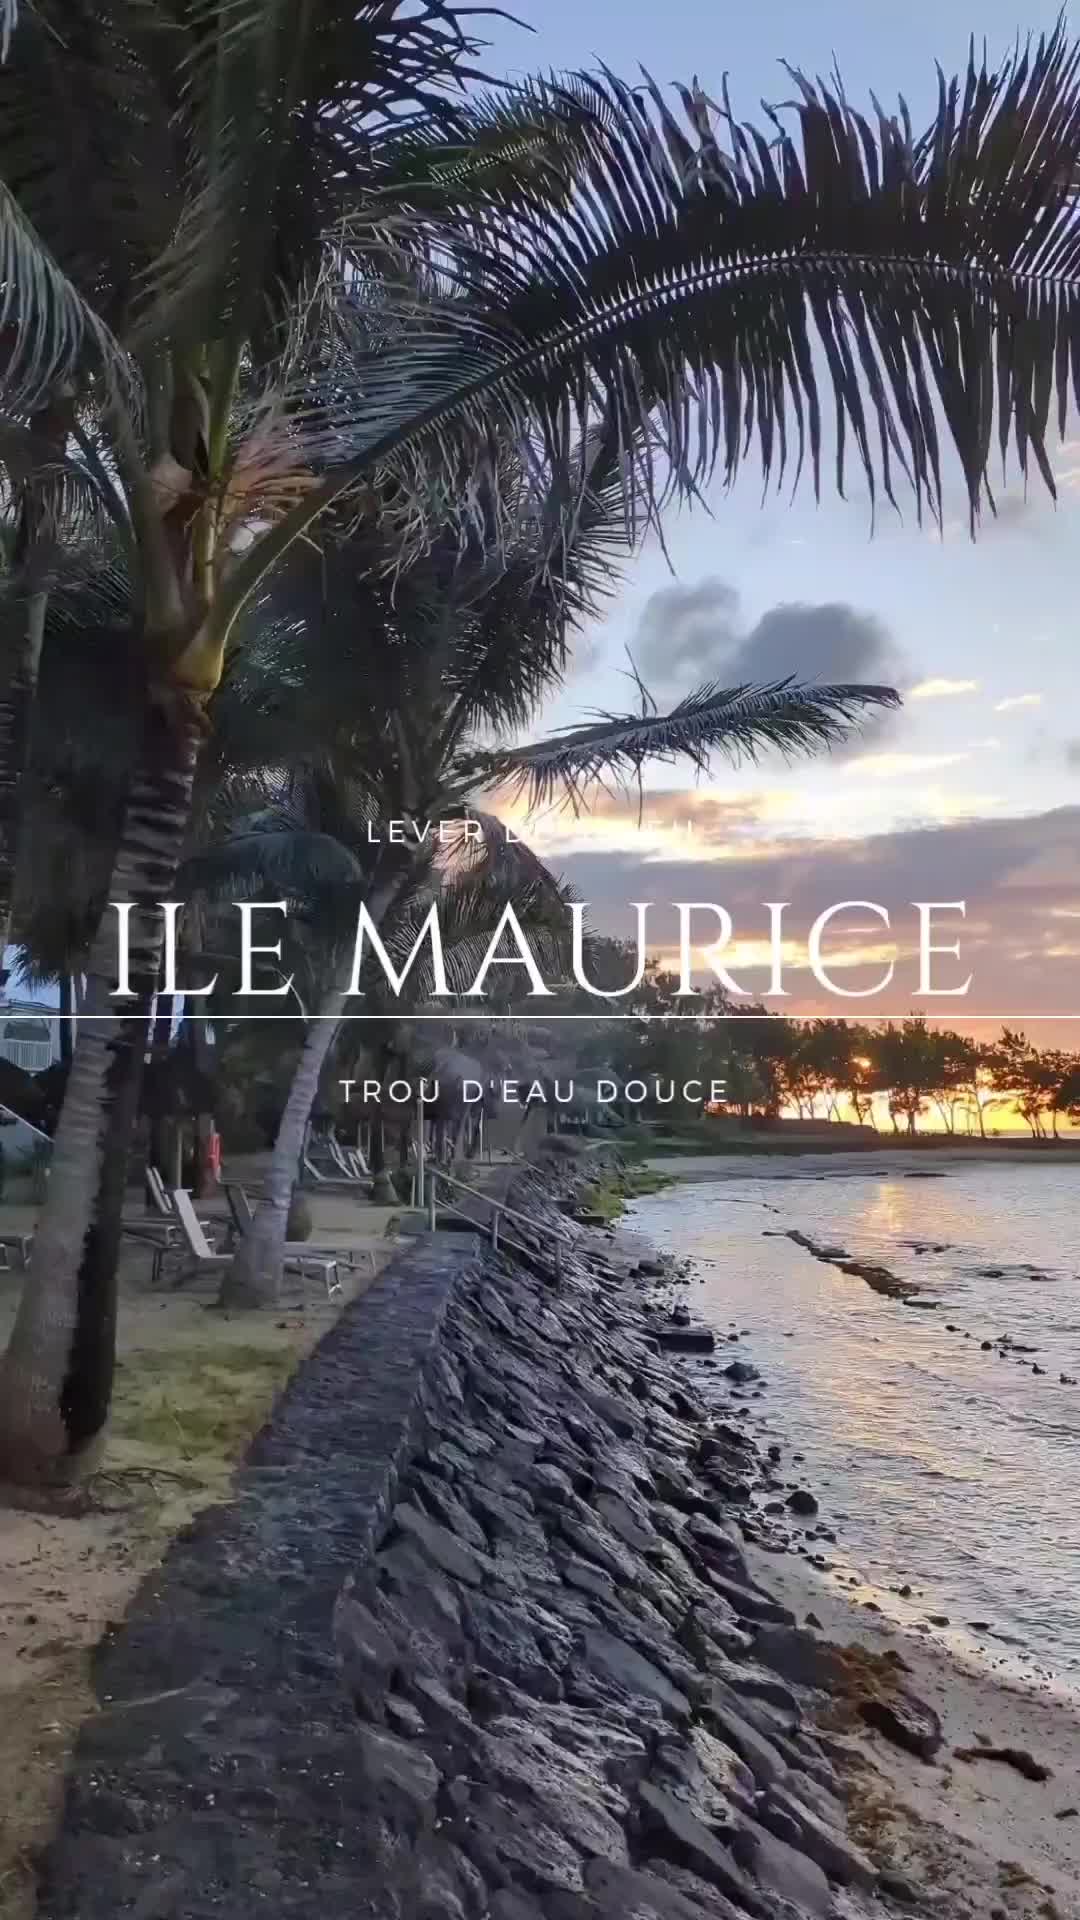 [Discover Mahebourg: A Mauritian Adventure]